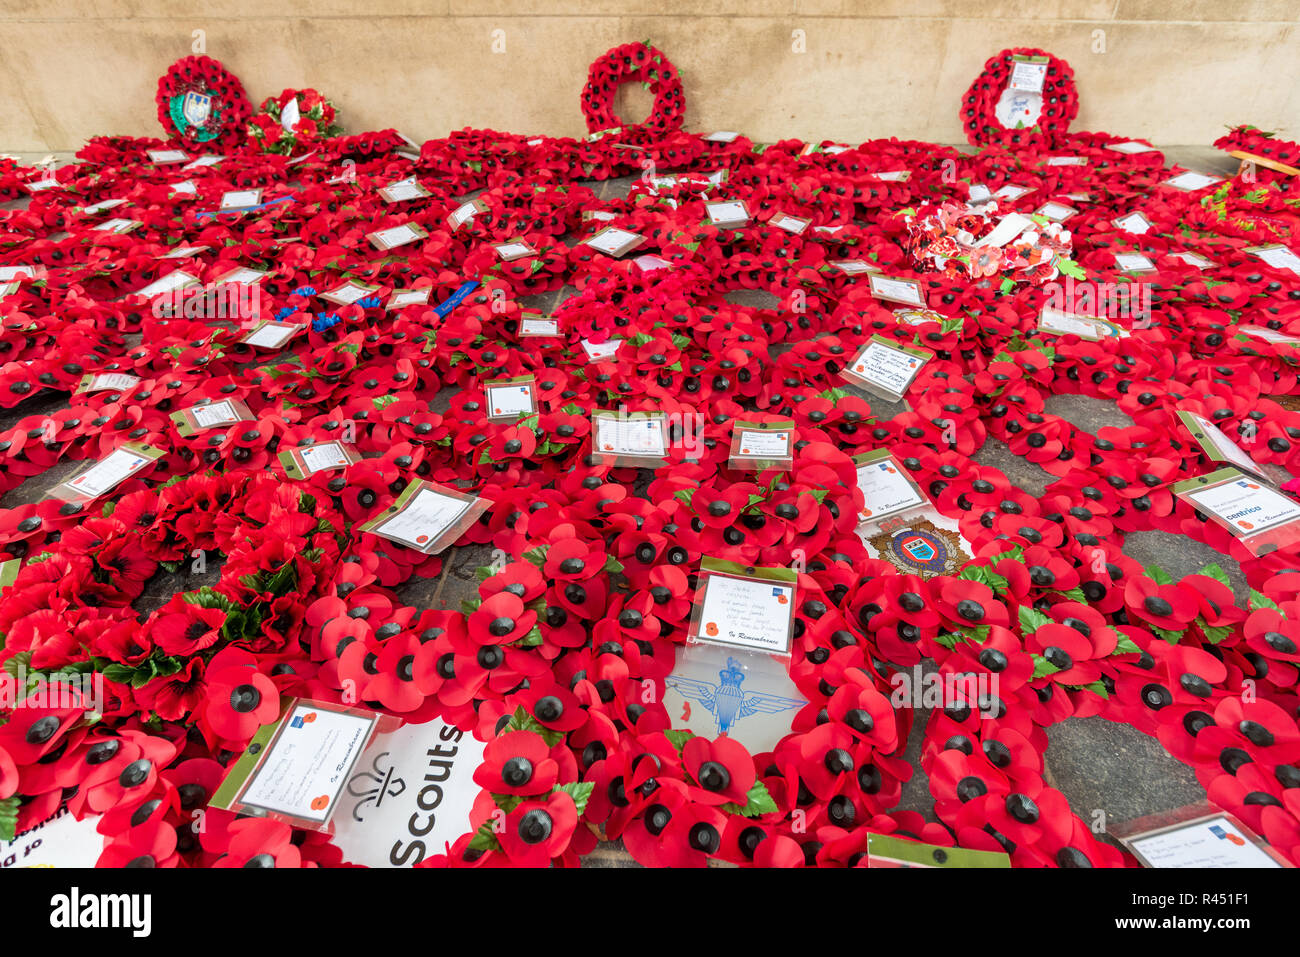 Poppy Kranzniederlegung am Menentor Memorial gelegt, um die Fehlenden der Hundertjahrfeier der Armistice Day, Ypern, Belgien zu markieren Stockfoto